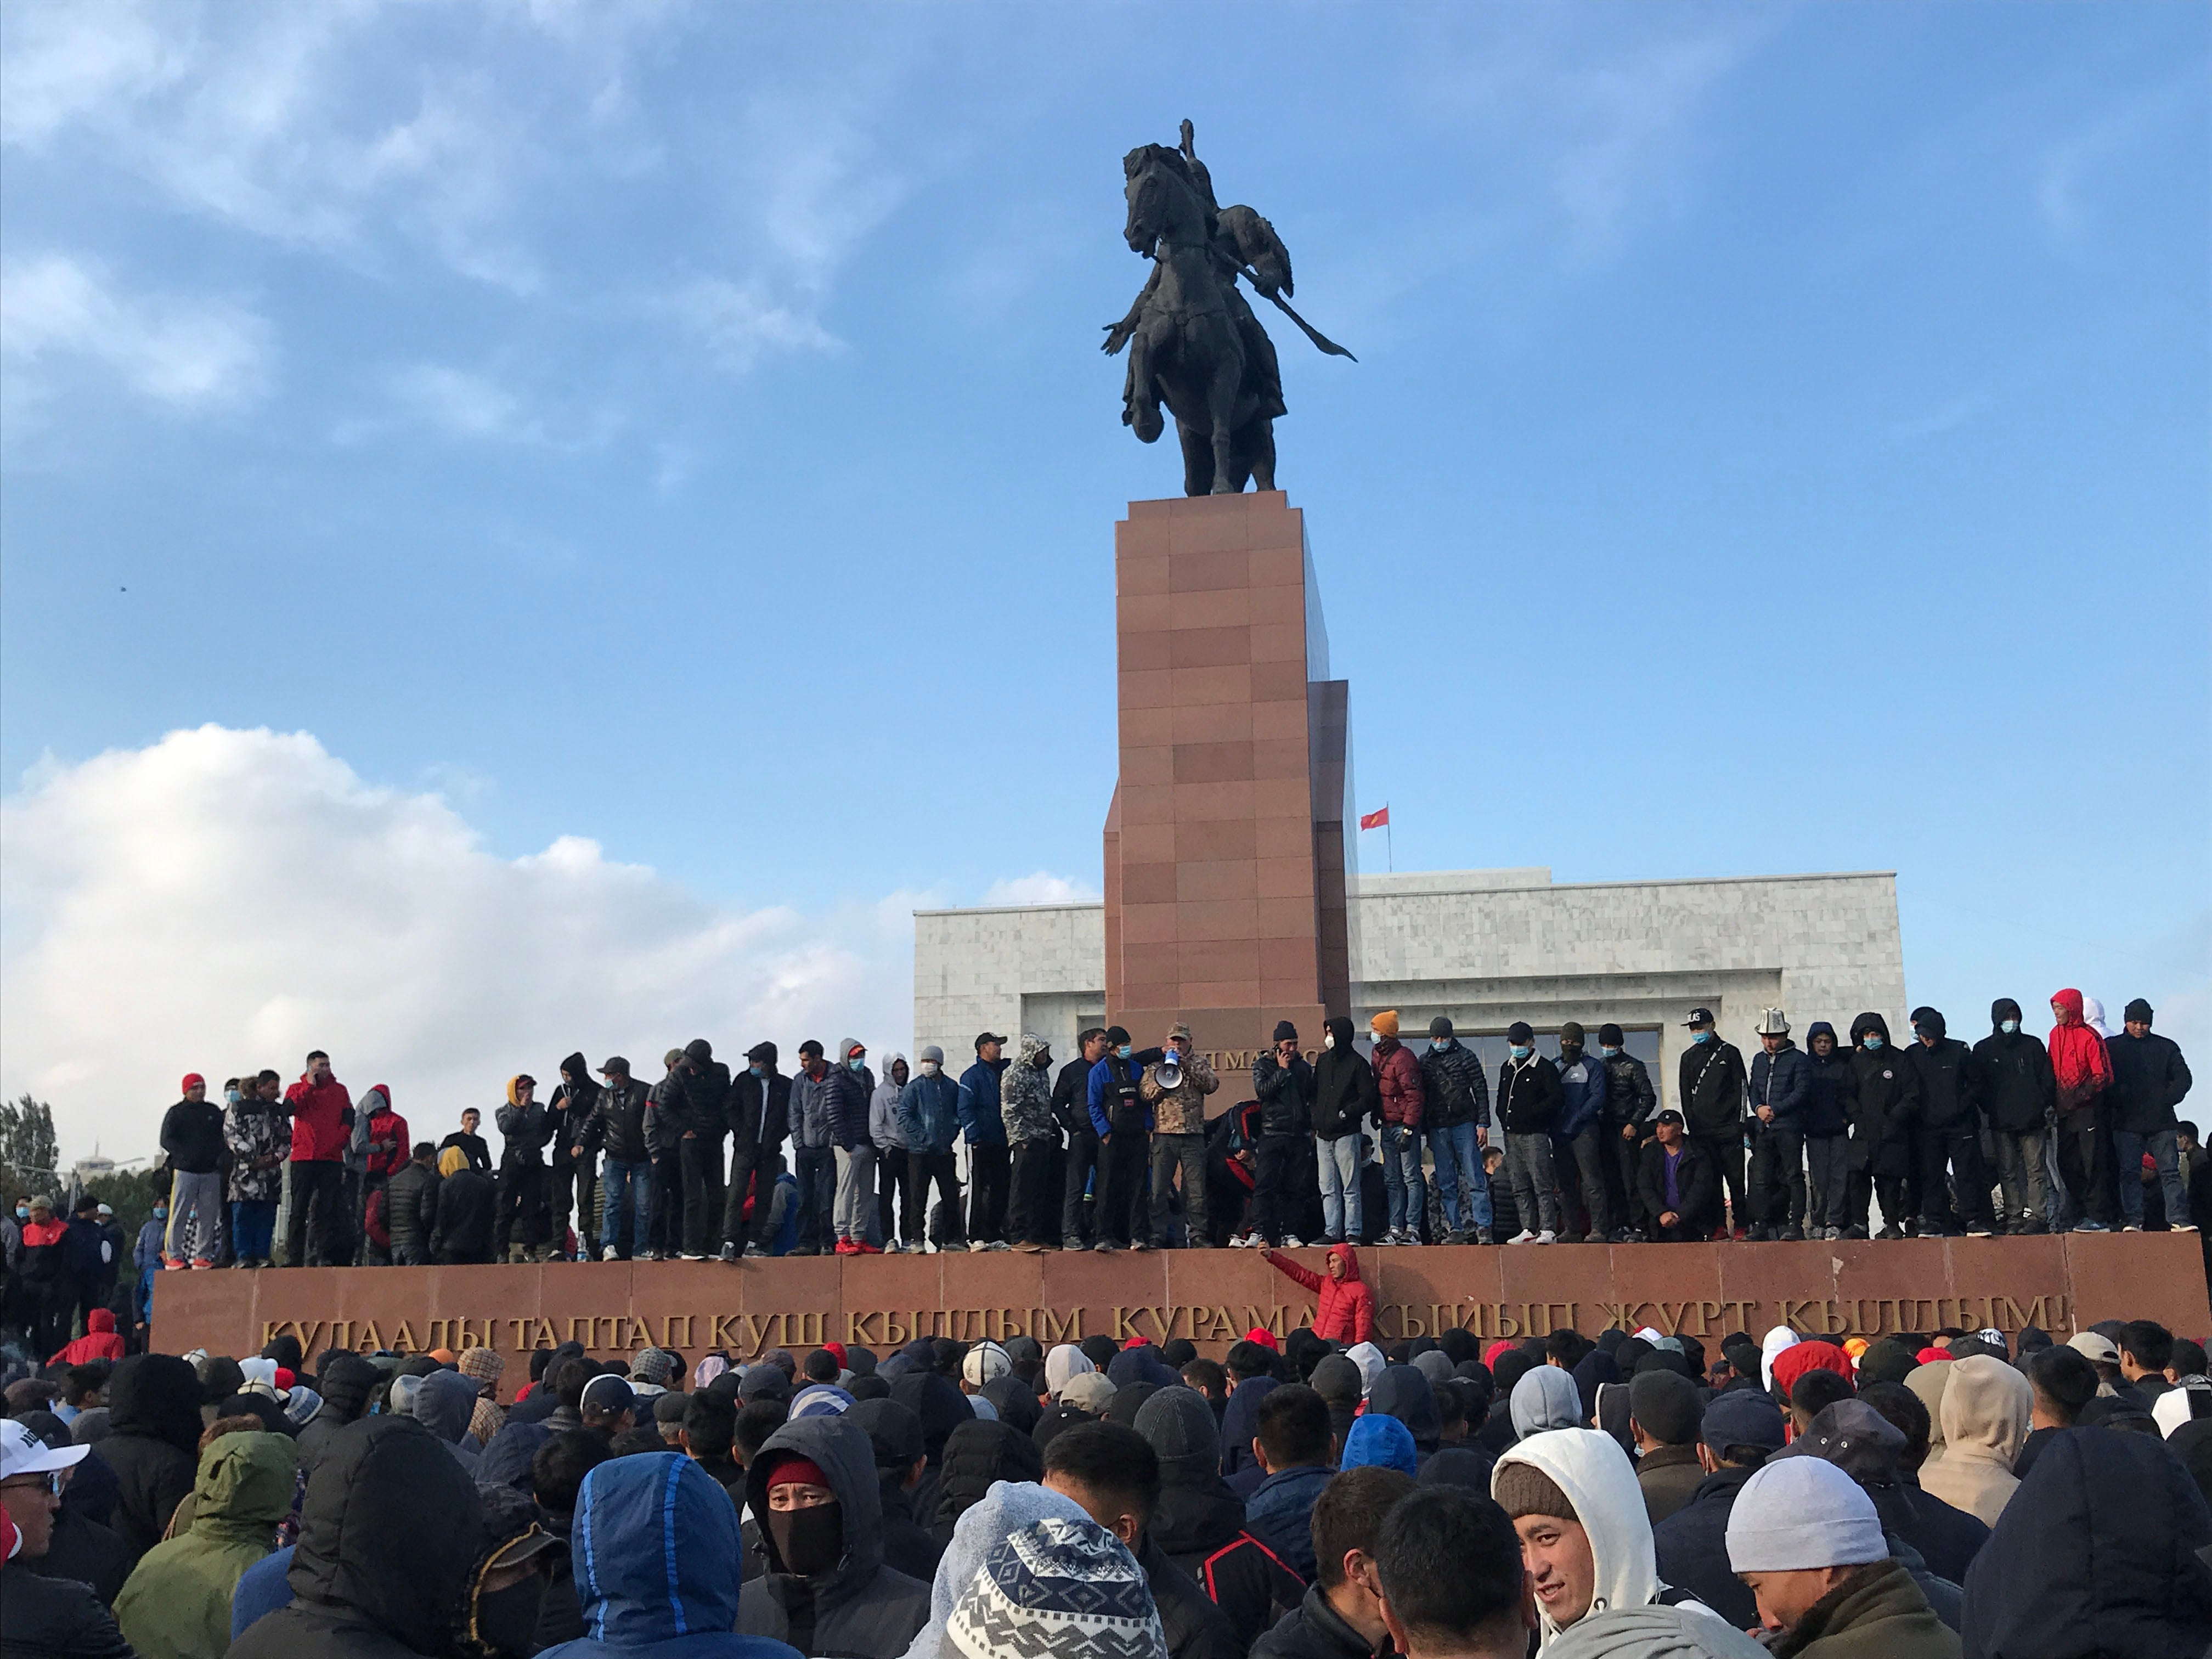 Протестующие на площади Ала-Тоо в Бишкеке, Кыргызстан, 6 октября 2020 года, через два дня после парламентских выборов.